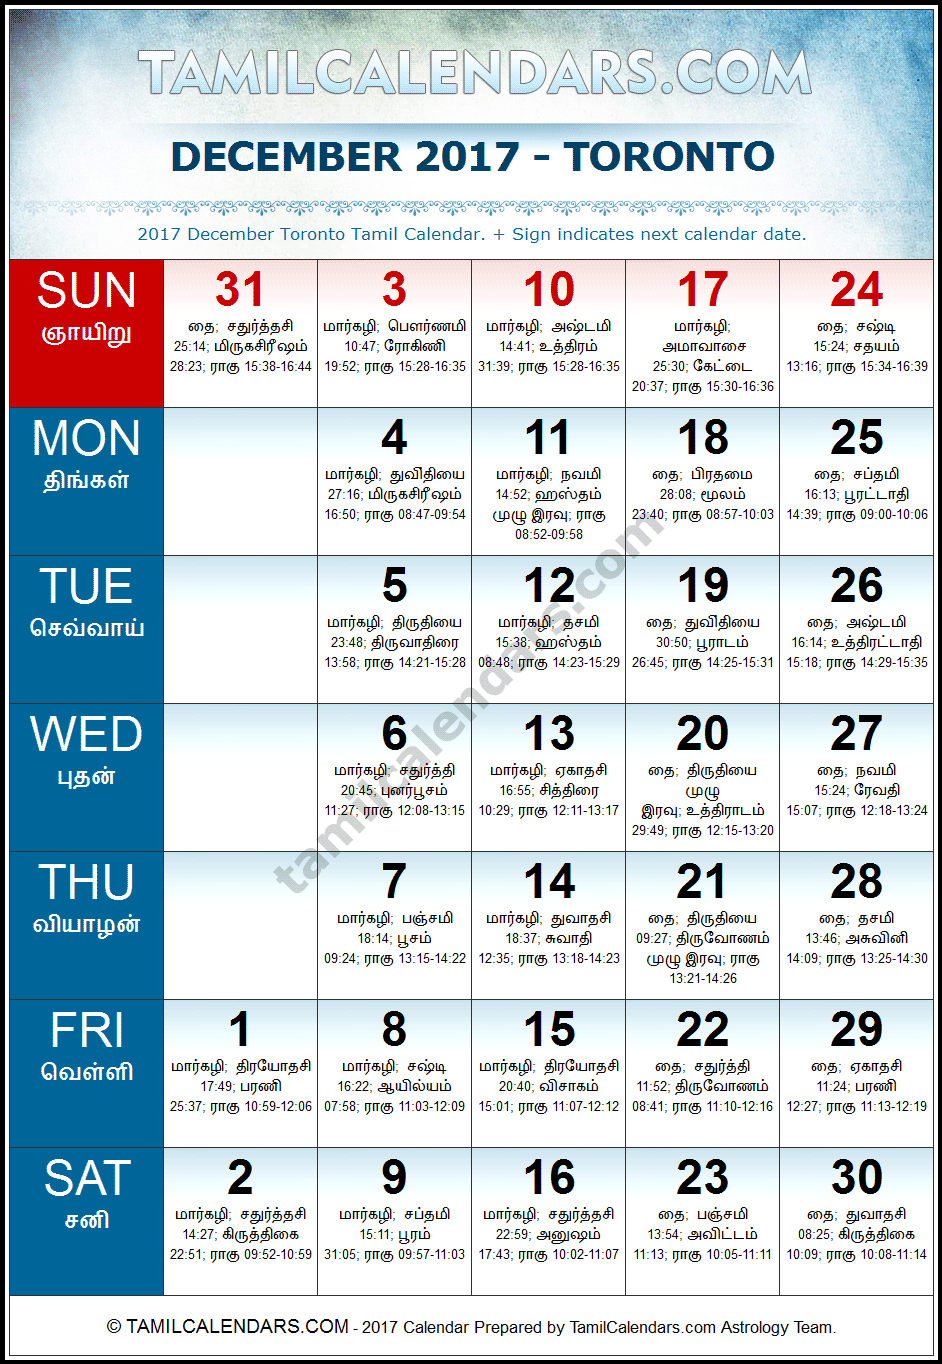 December 2017 Tamil Calendar for Toronto, Canada